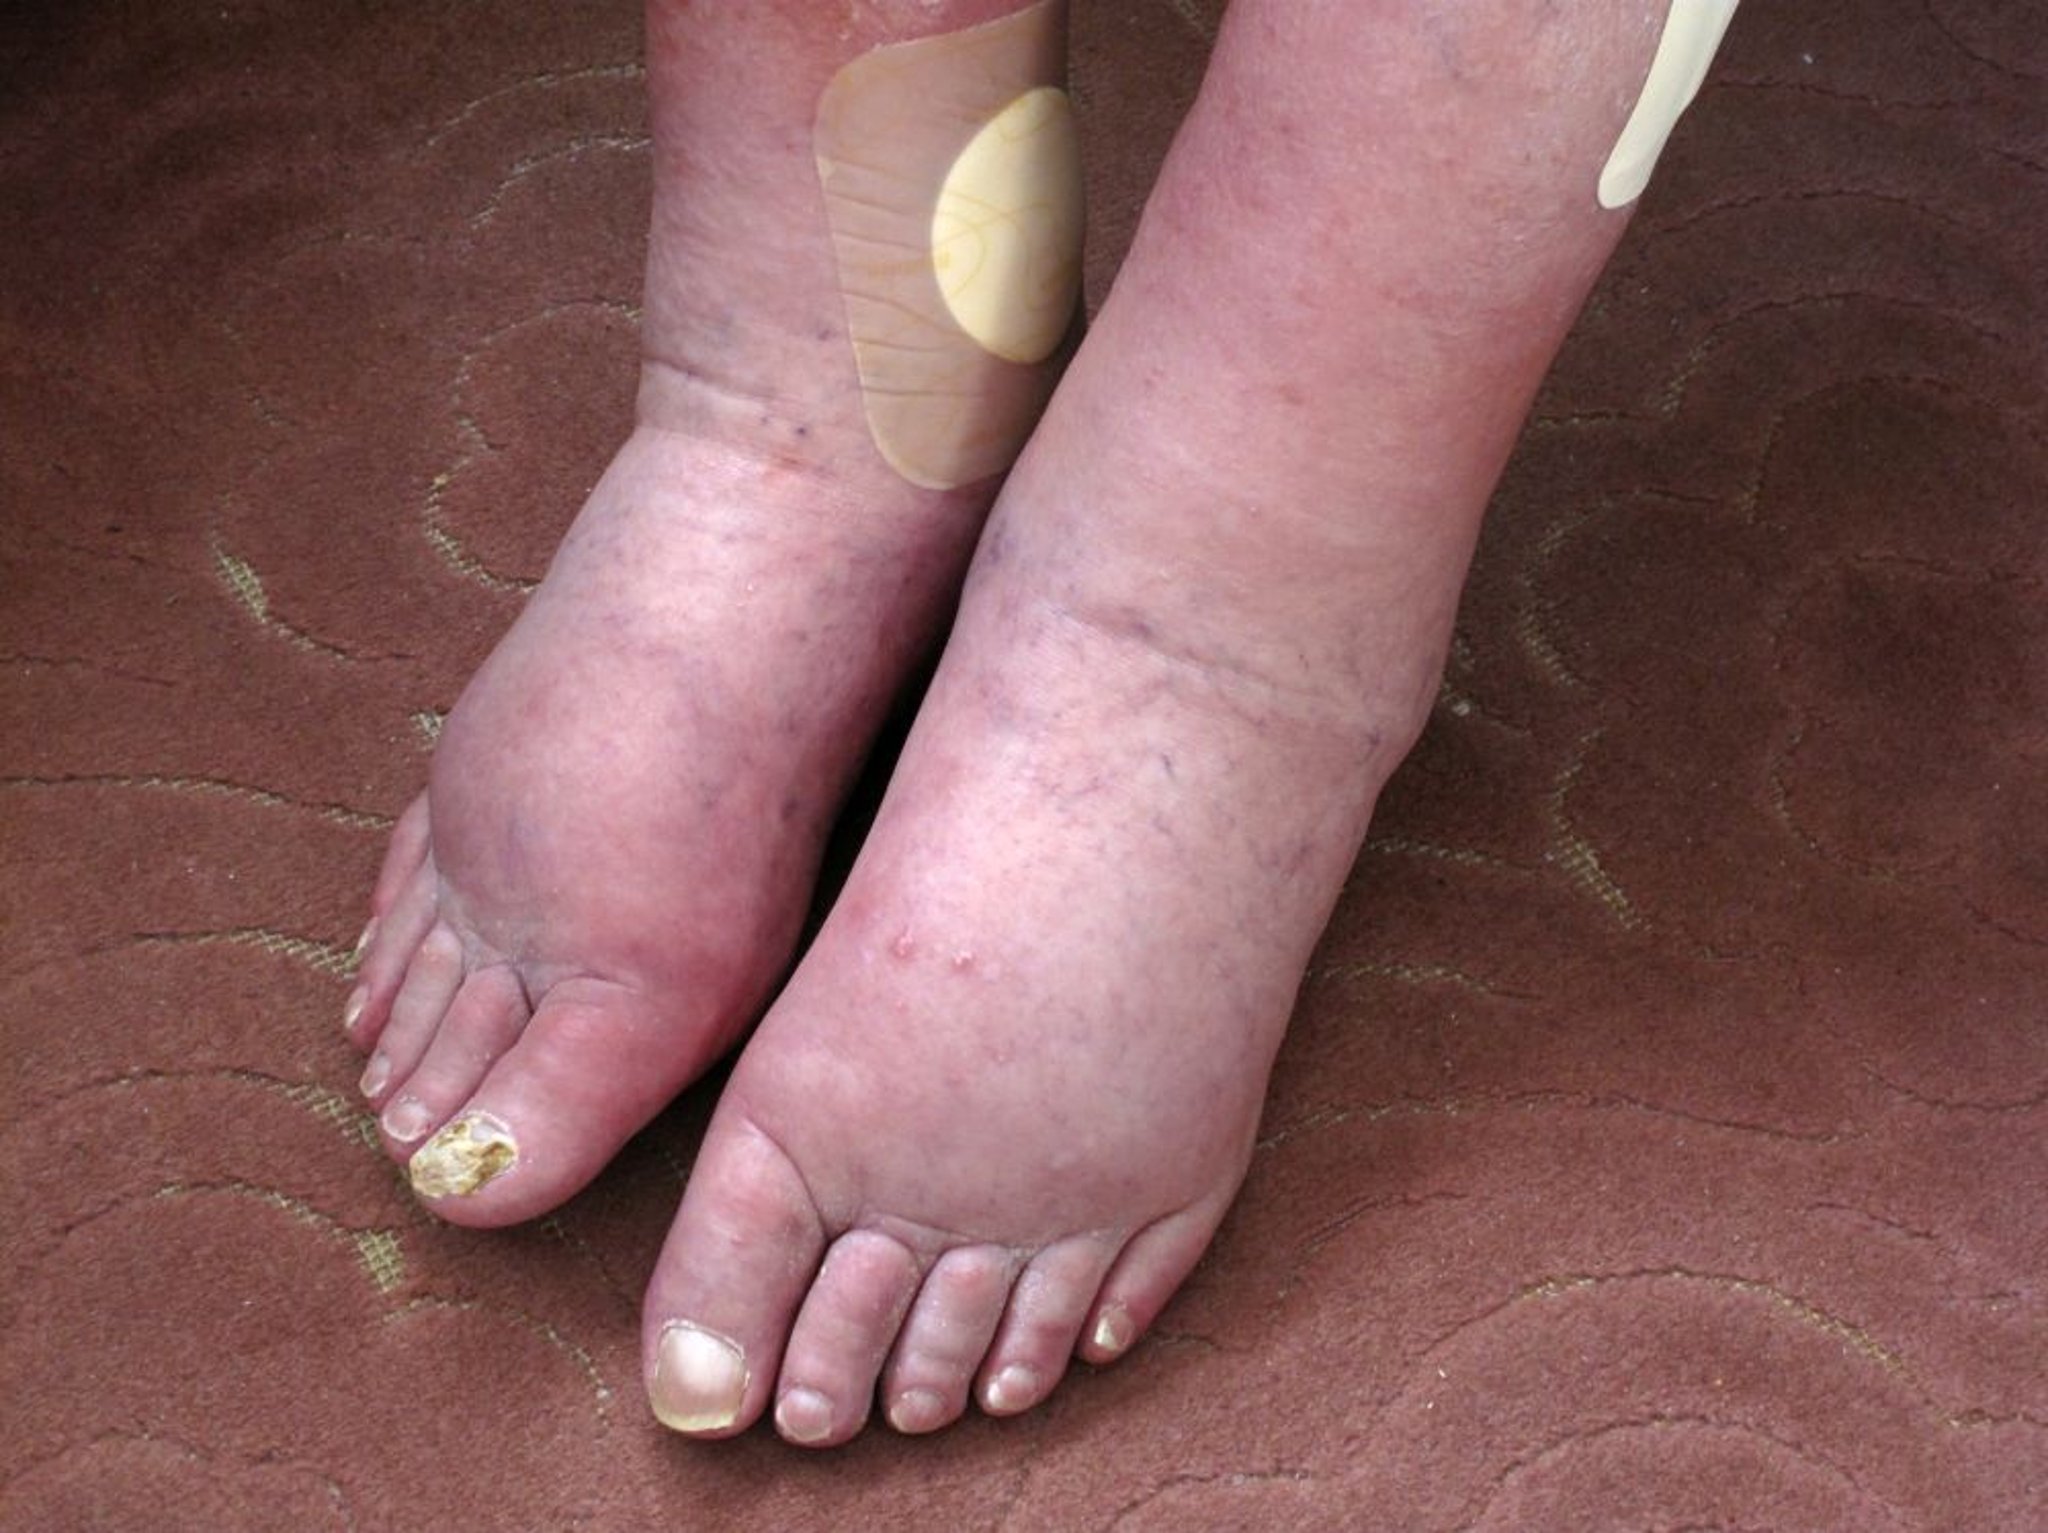 Hinchazón de la pierna (edema)